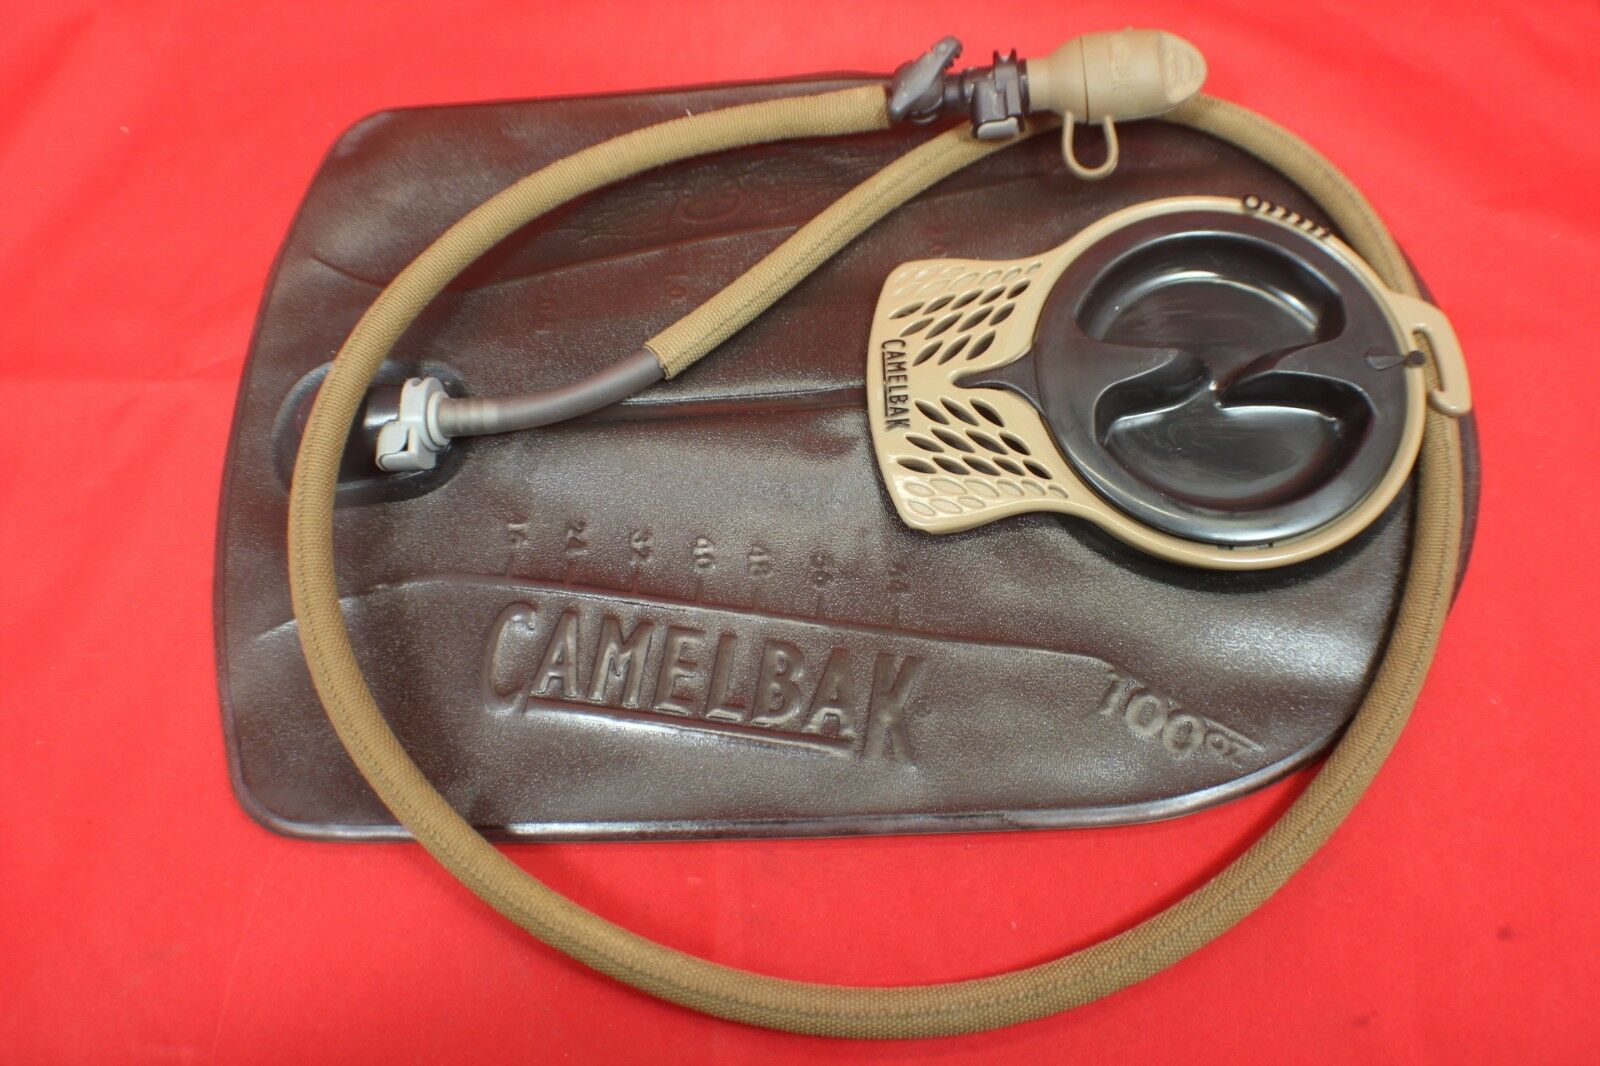 U.s.m.c. 100 Oz Camelbak Antidote Bladder Reservoir Light Use Tested For Leaks